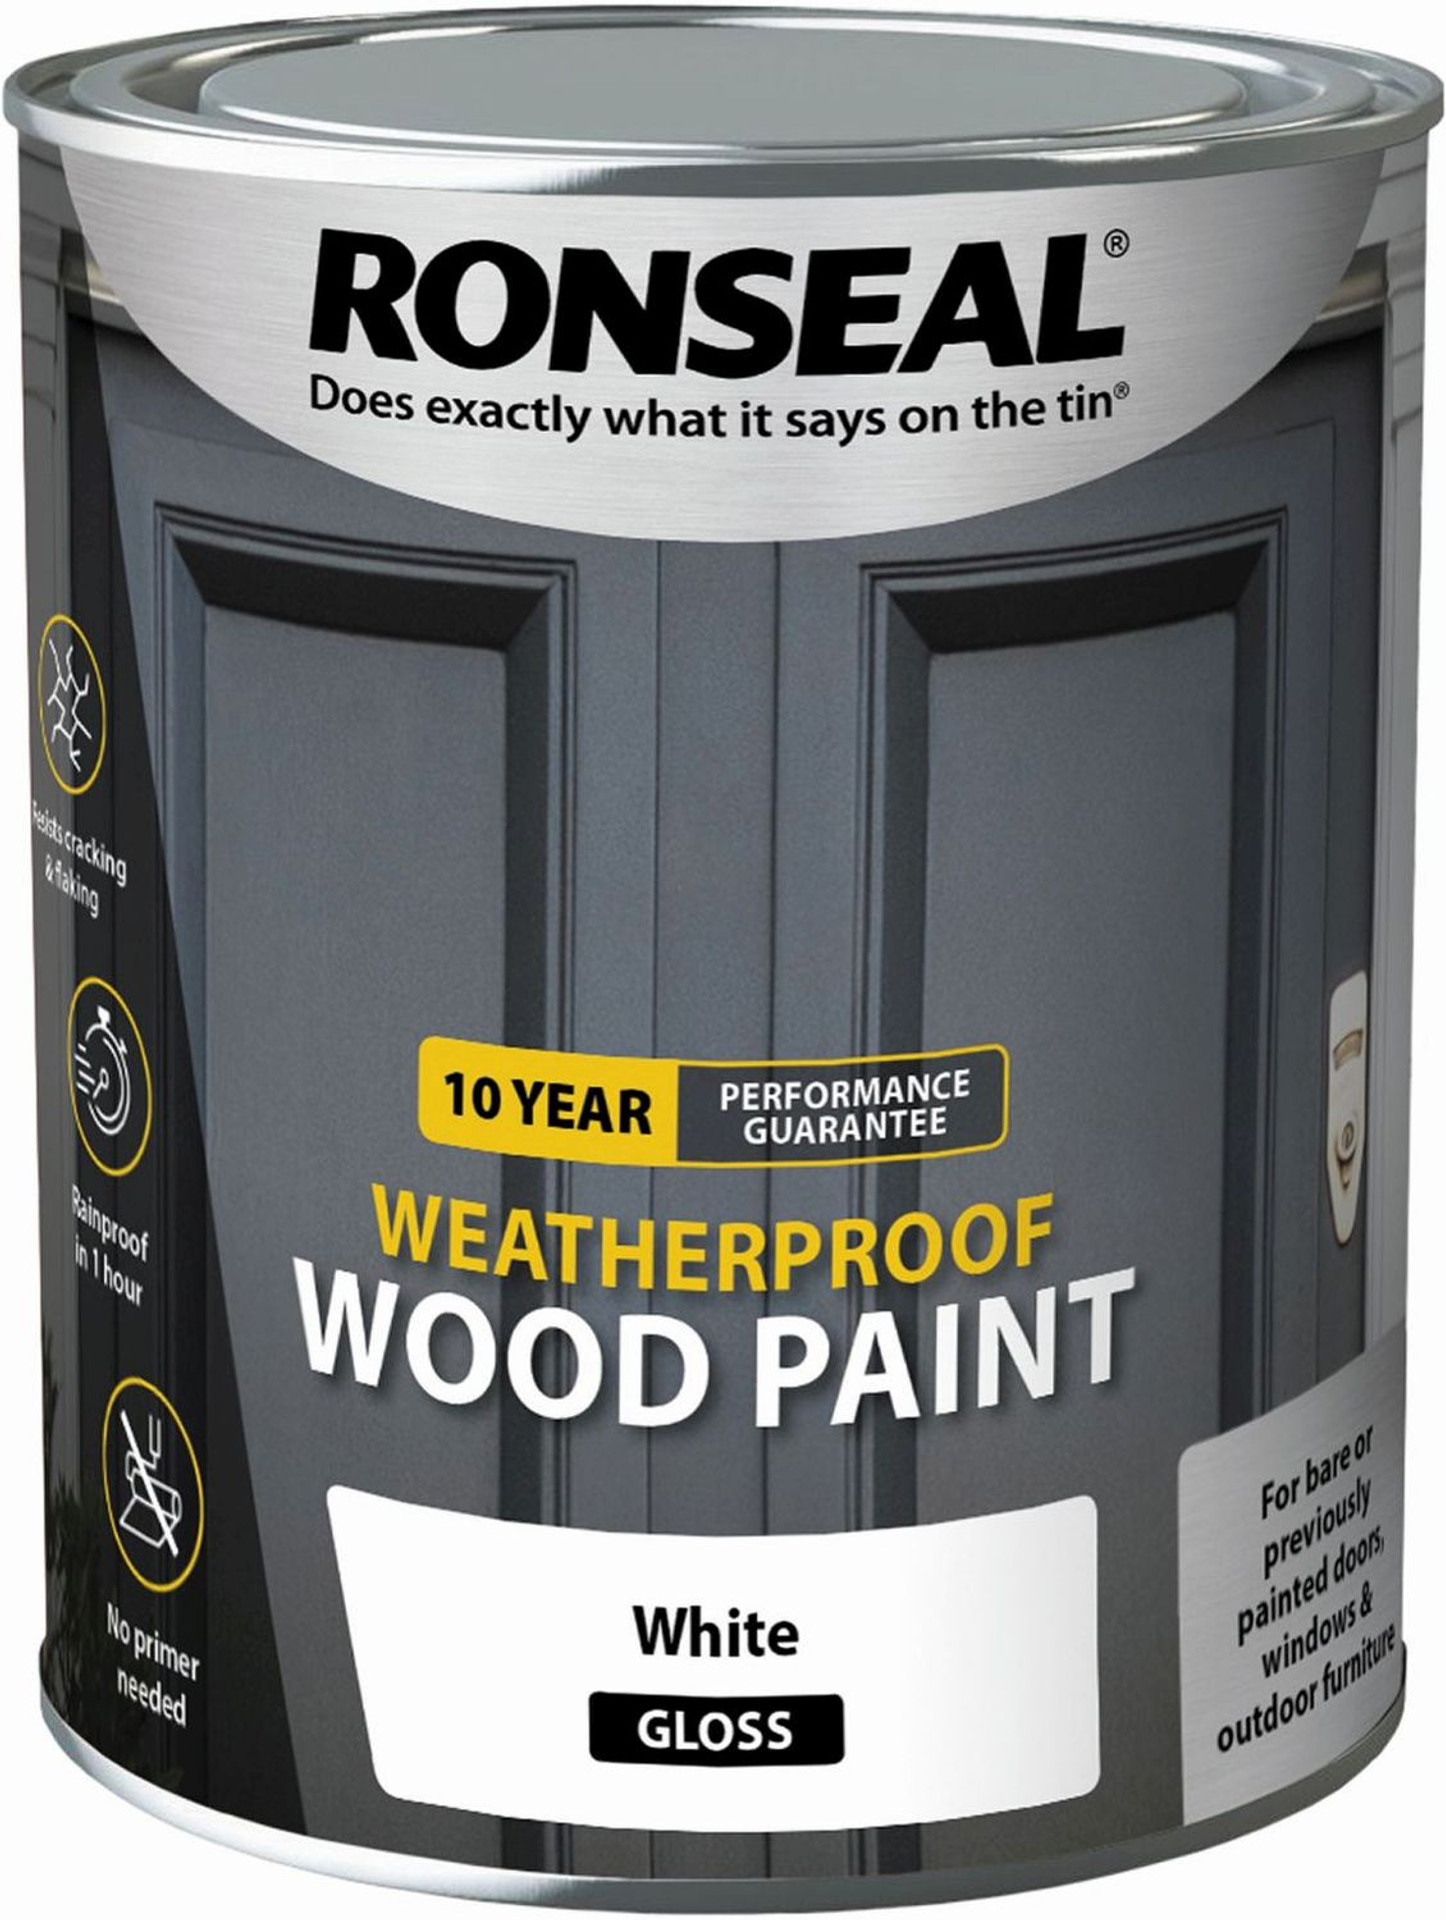 10 Year Weatherproof Wood Paint